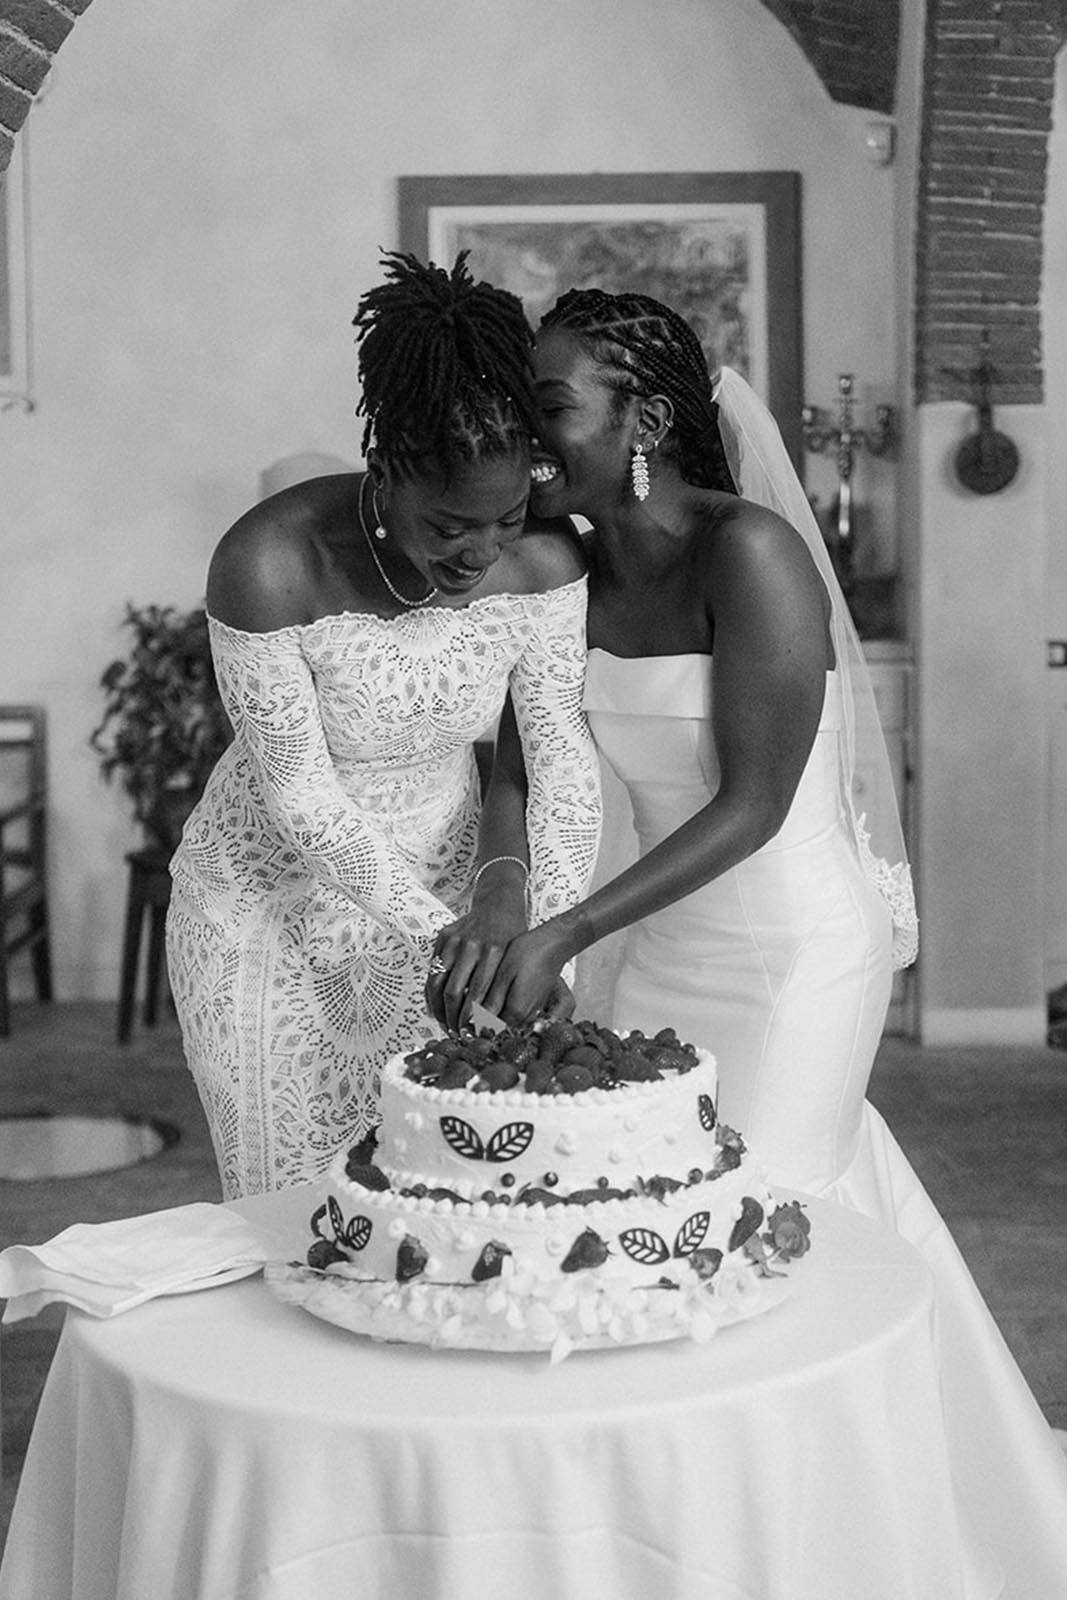 Two brides joyfully cutting their wedding cake together.